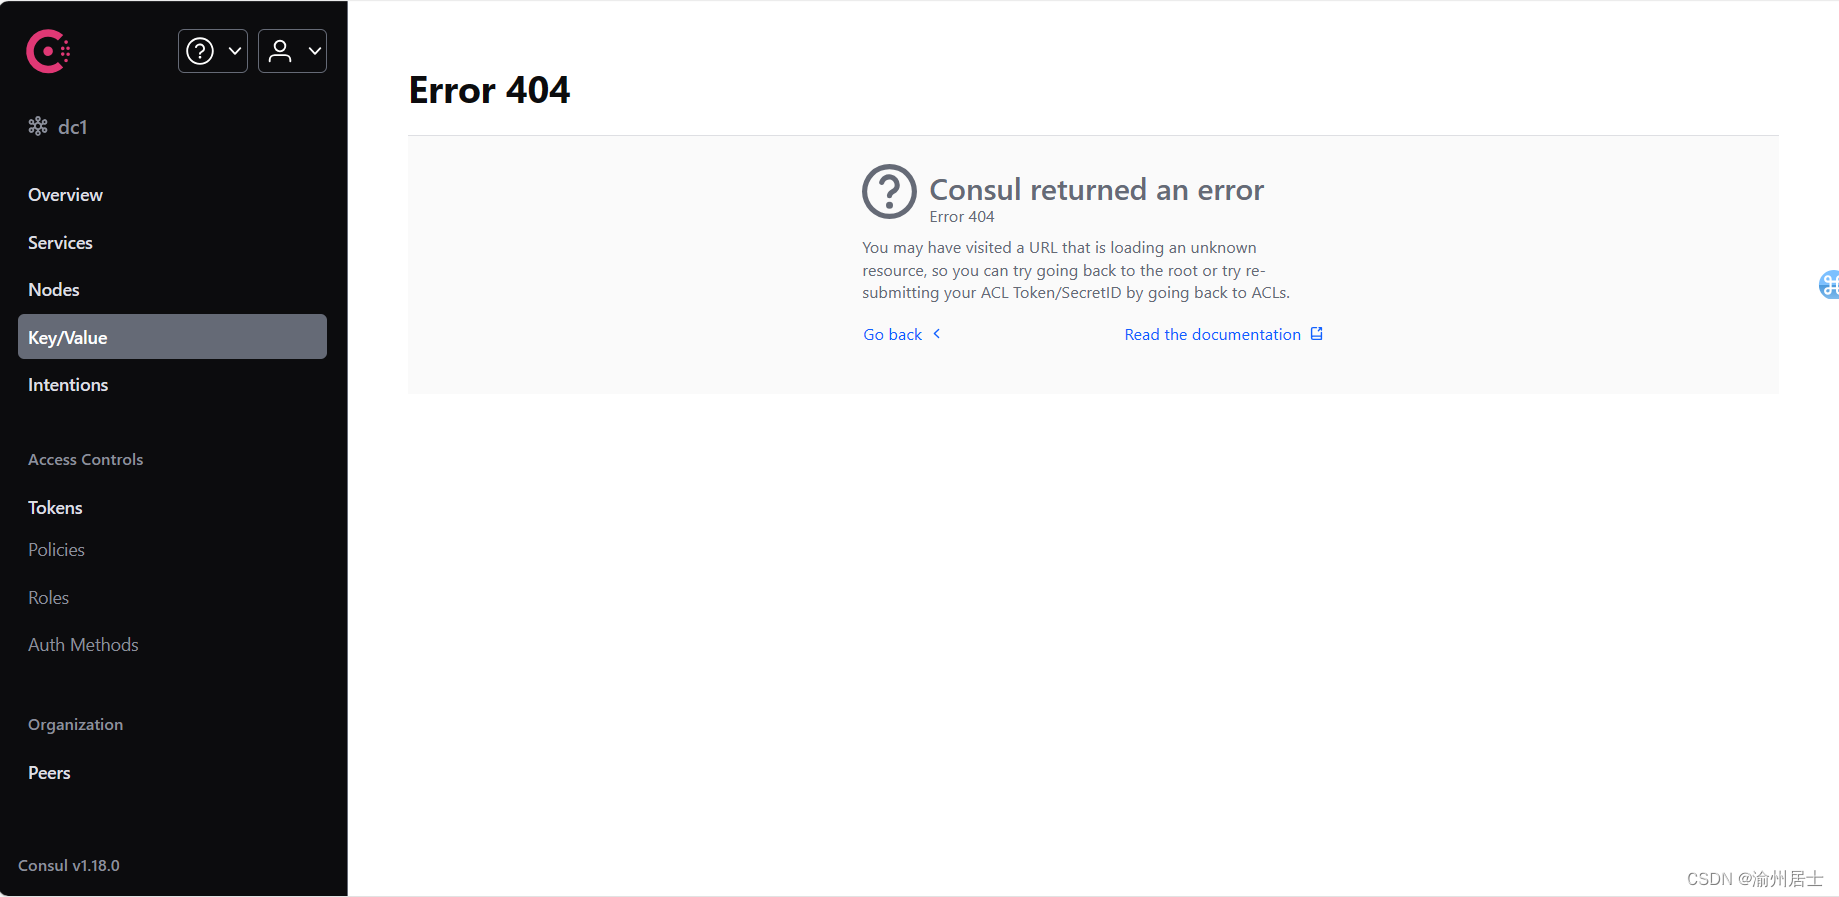 404错误